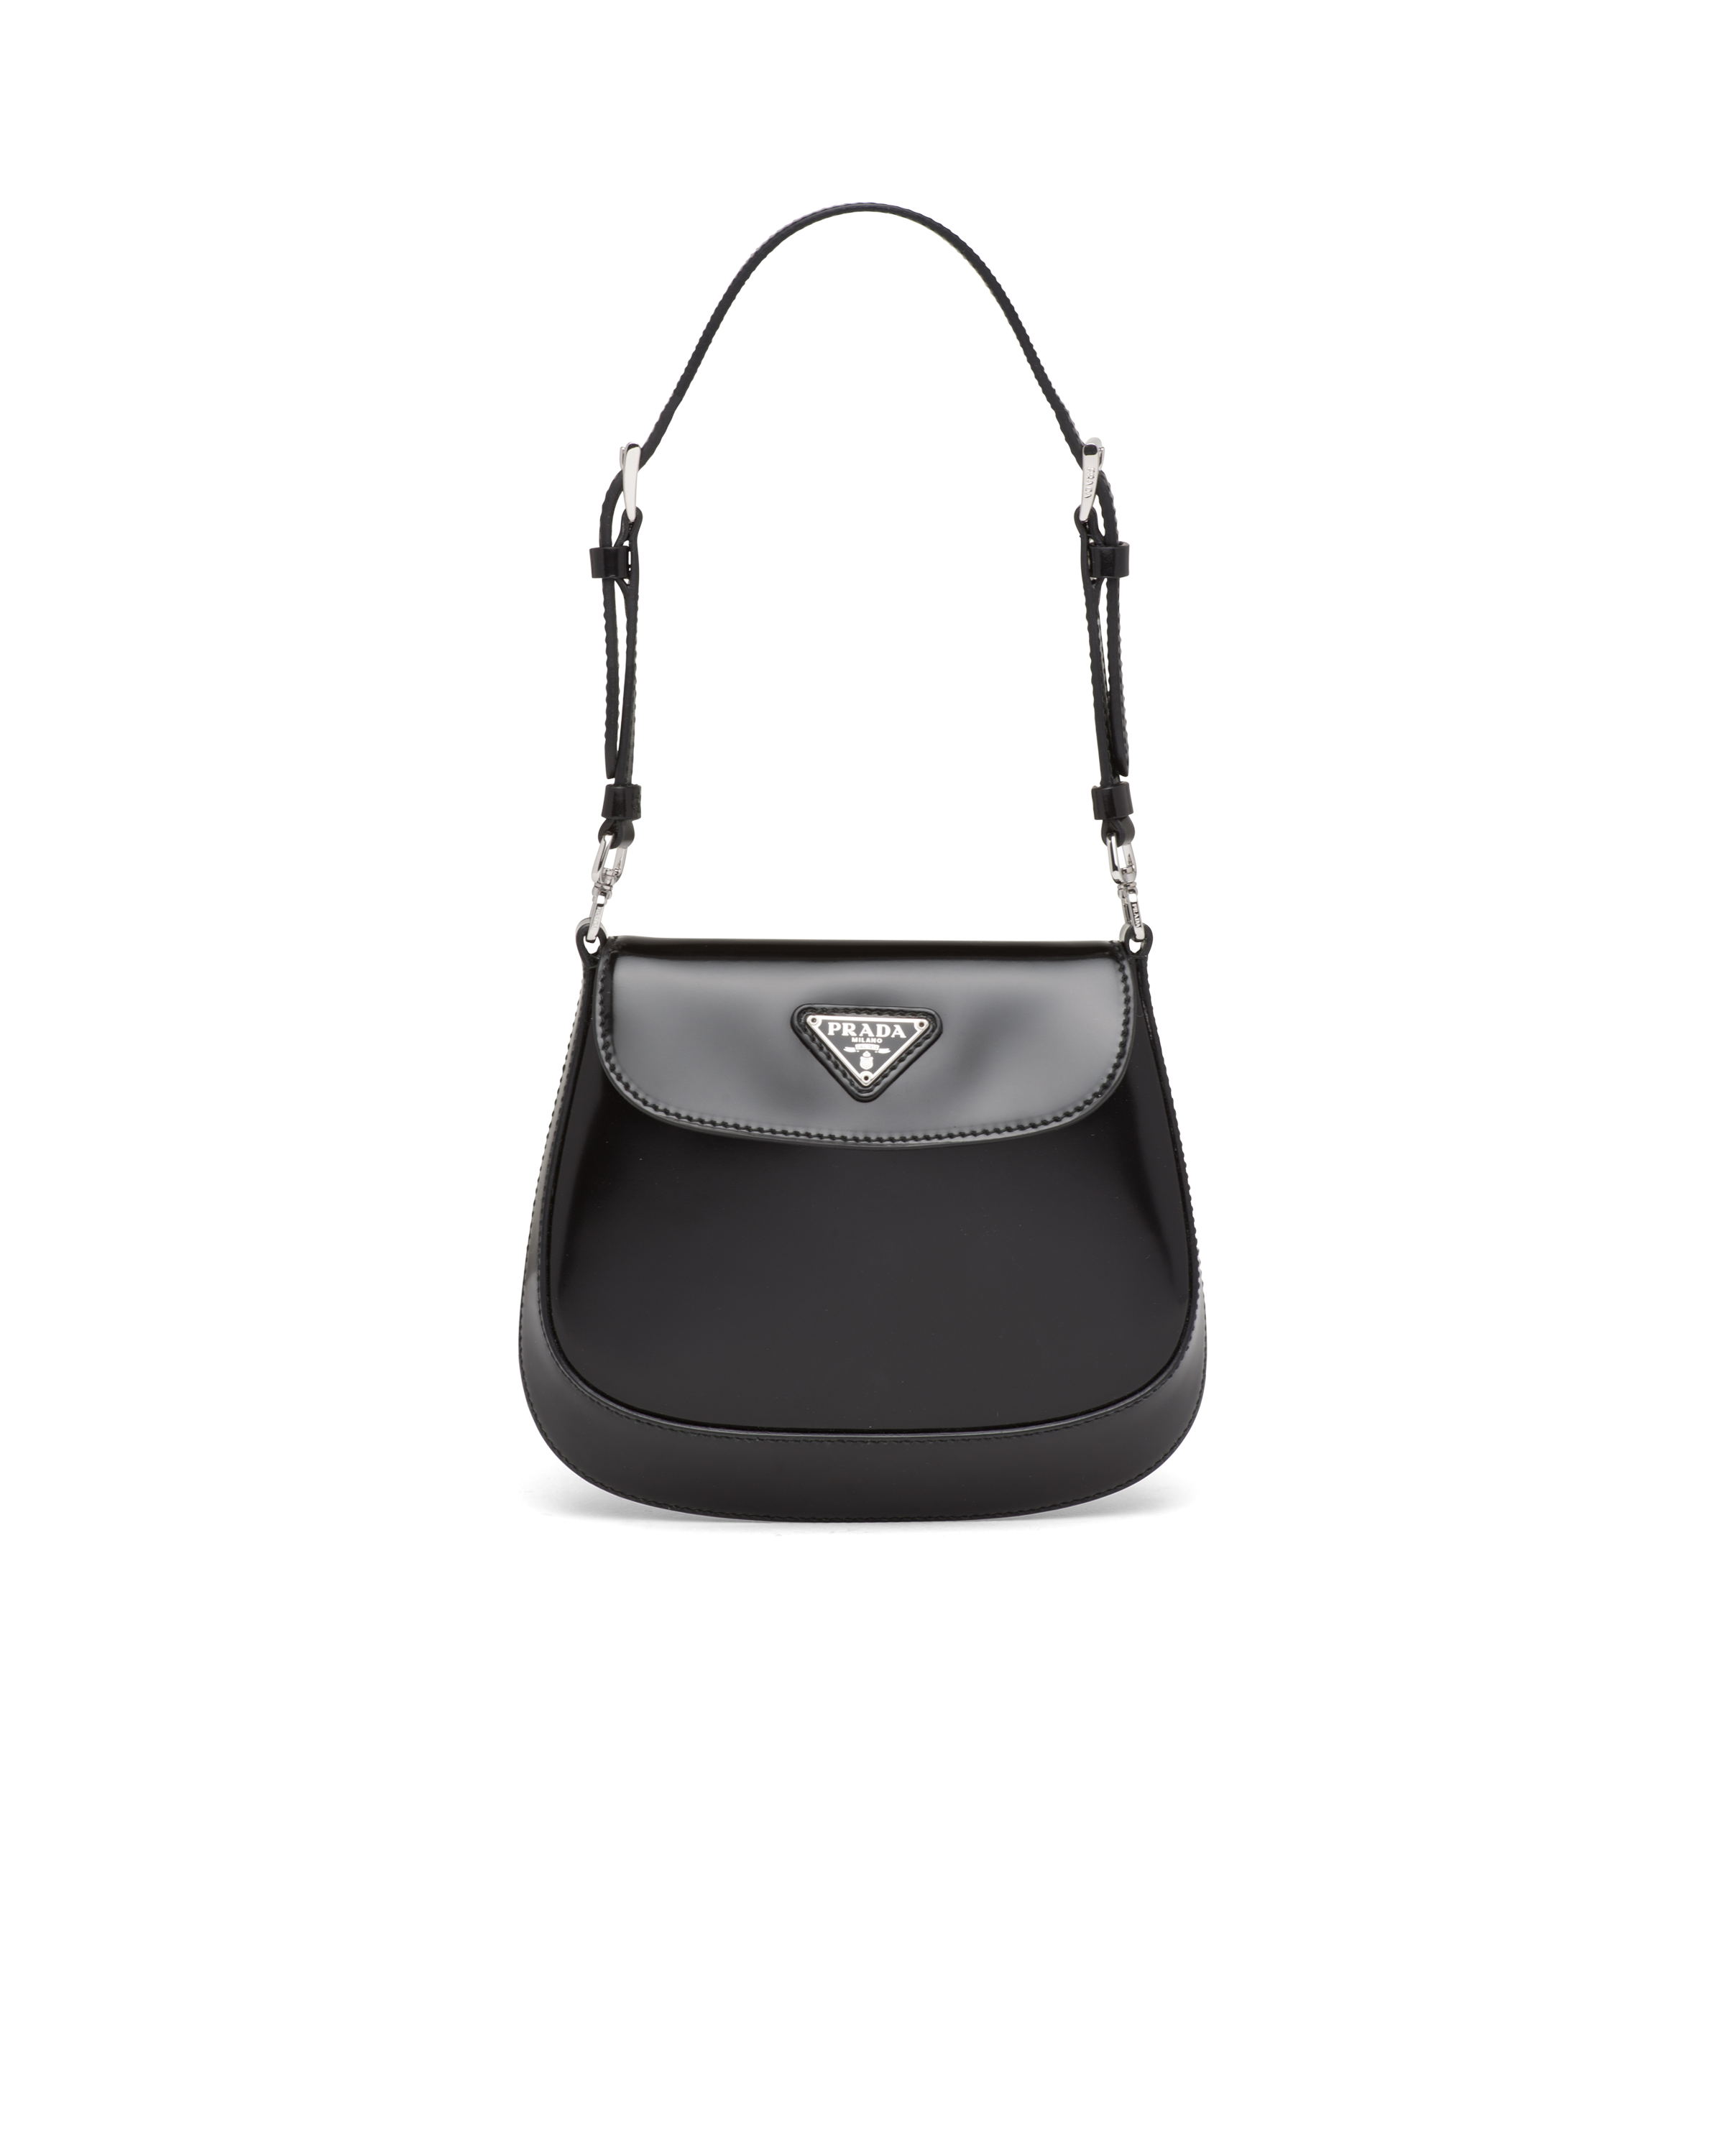 Prada - Women's Cleo Brushed Leather Mini Bag - (Black)